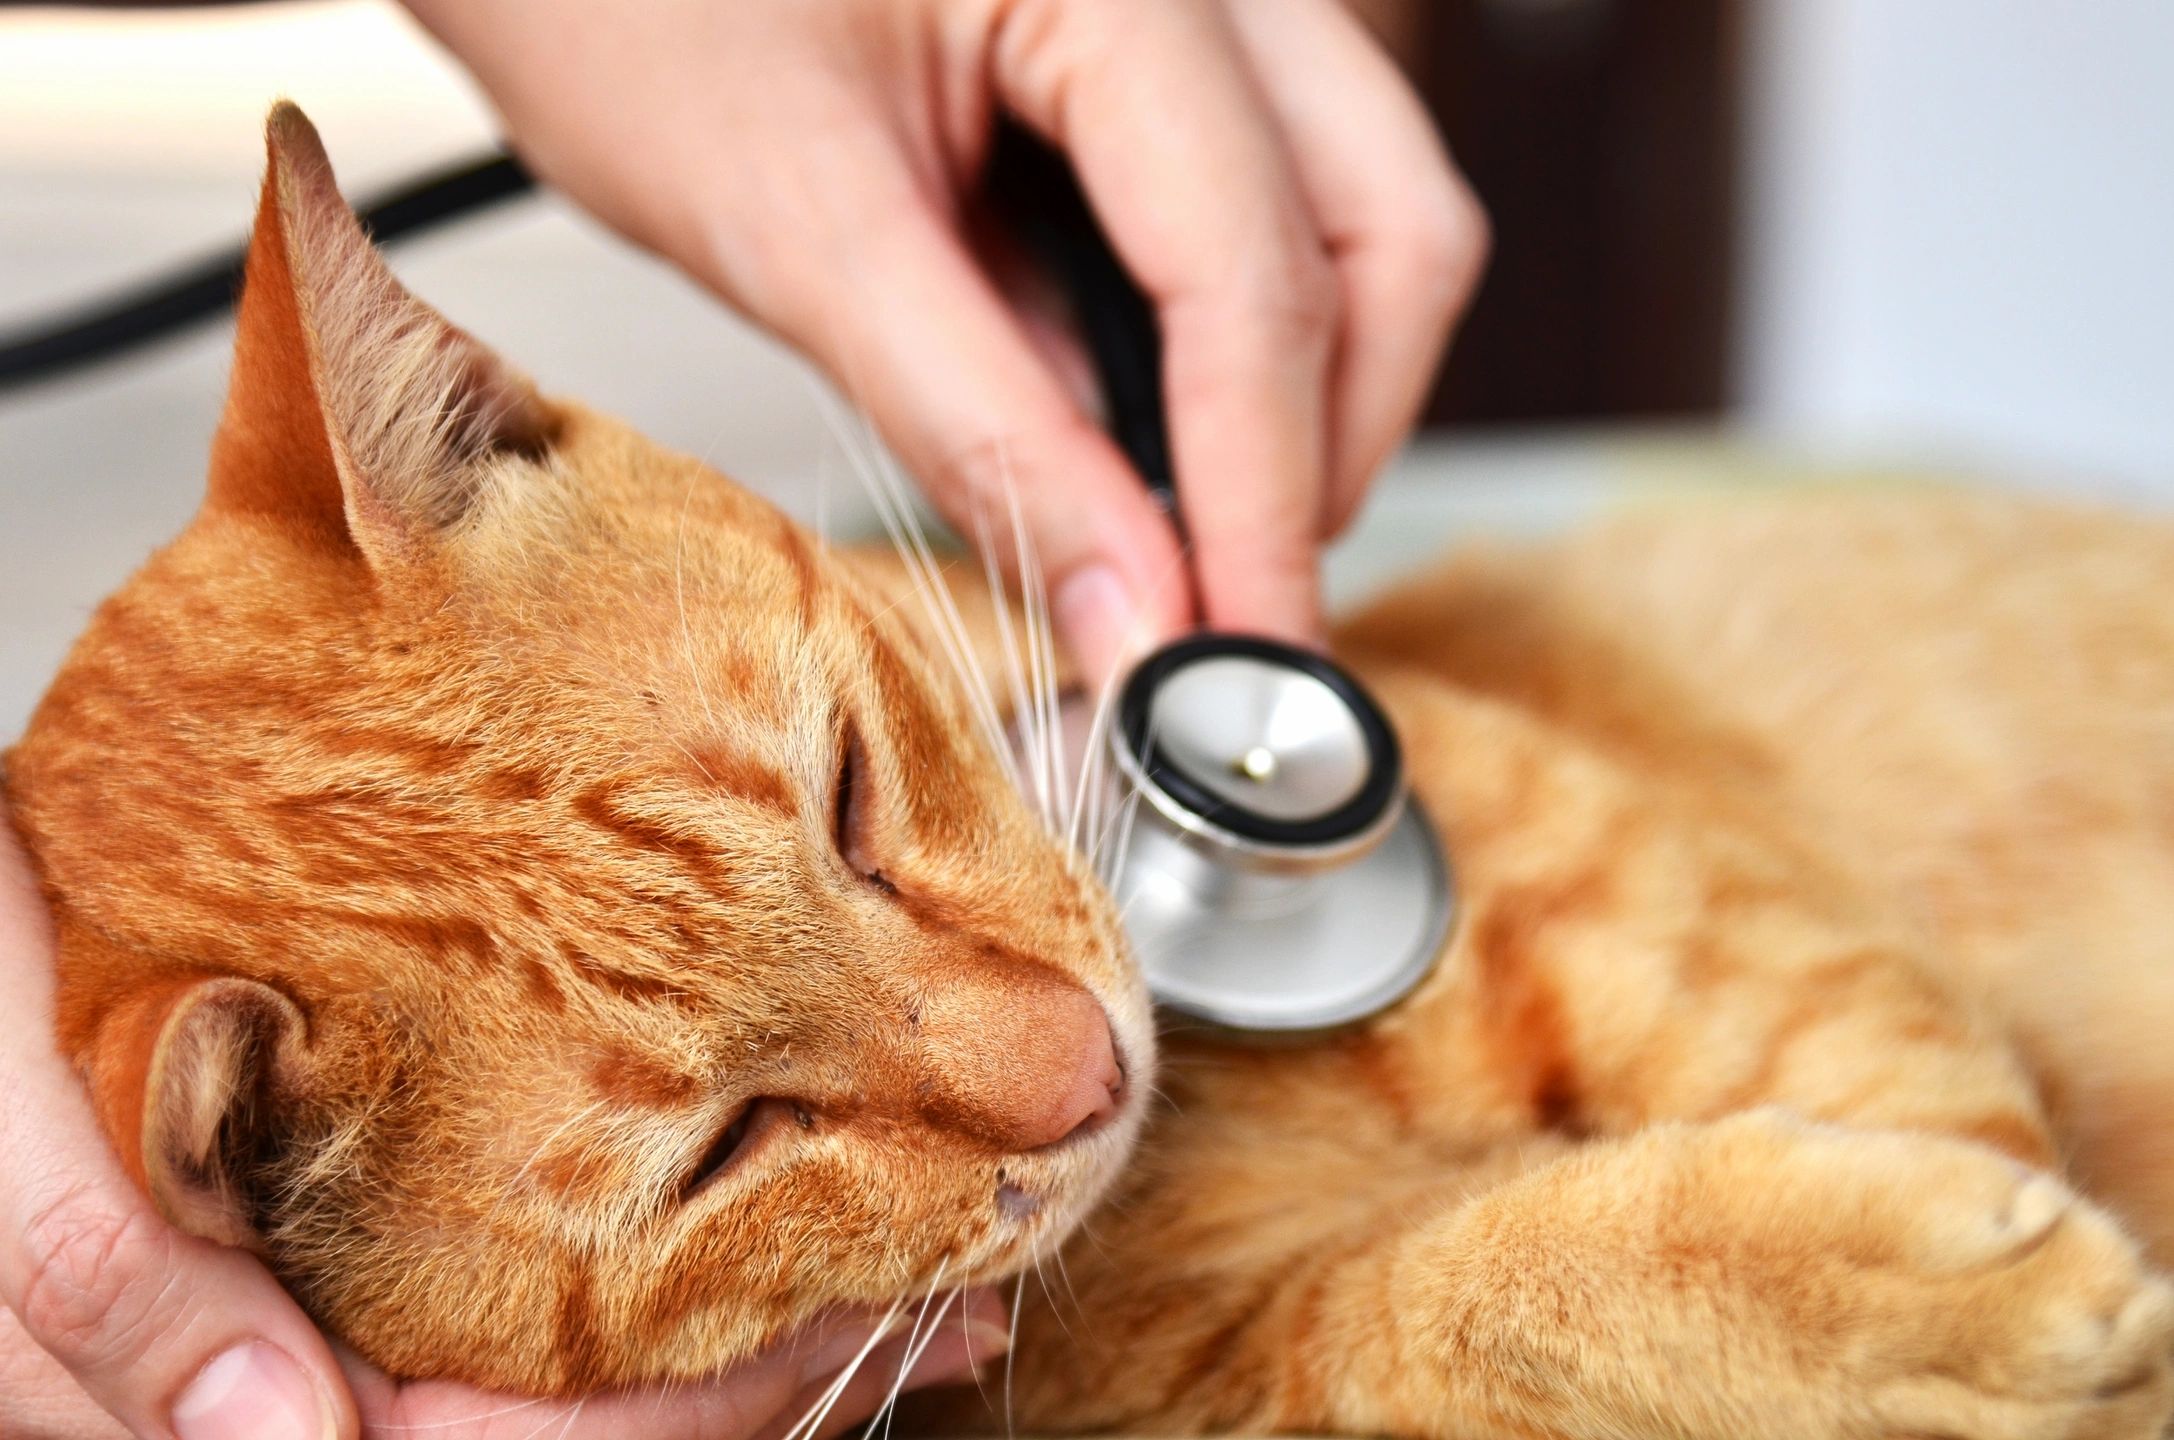 productos veterinarios para gatos, felinos.
productos para mascotas.